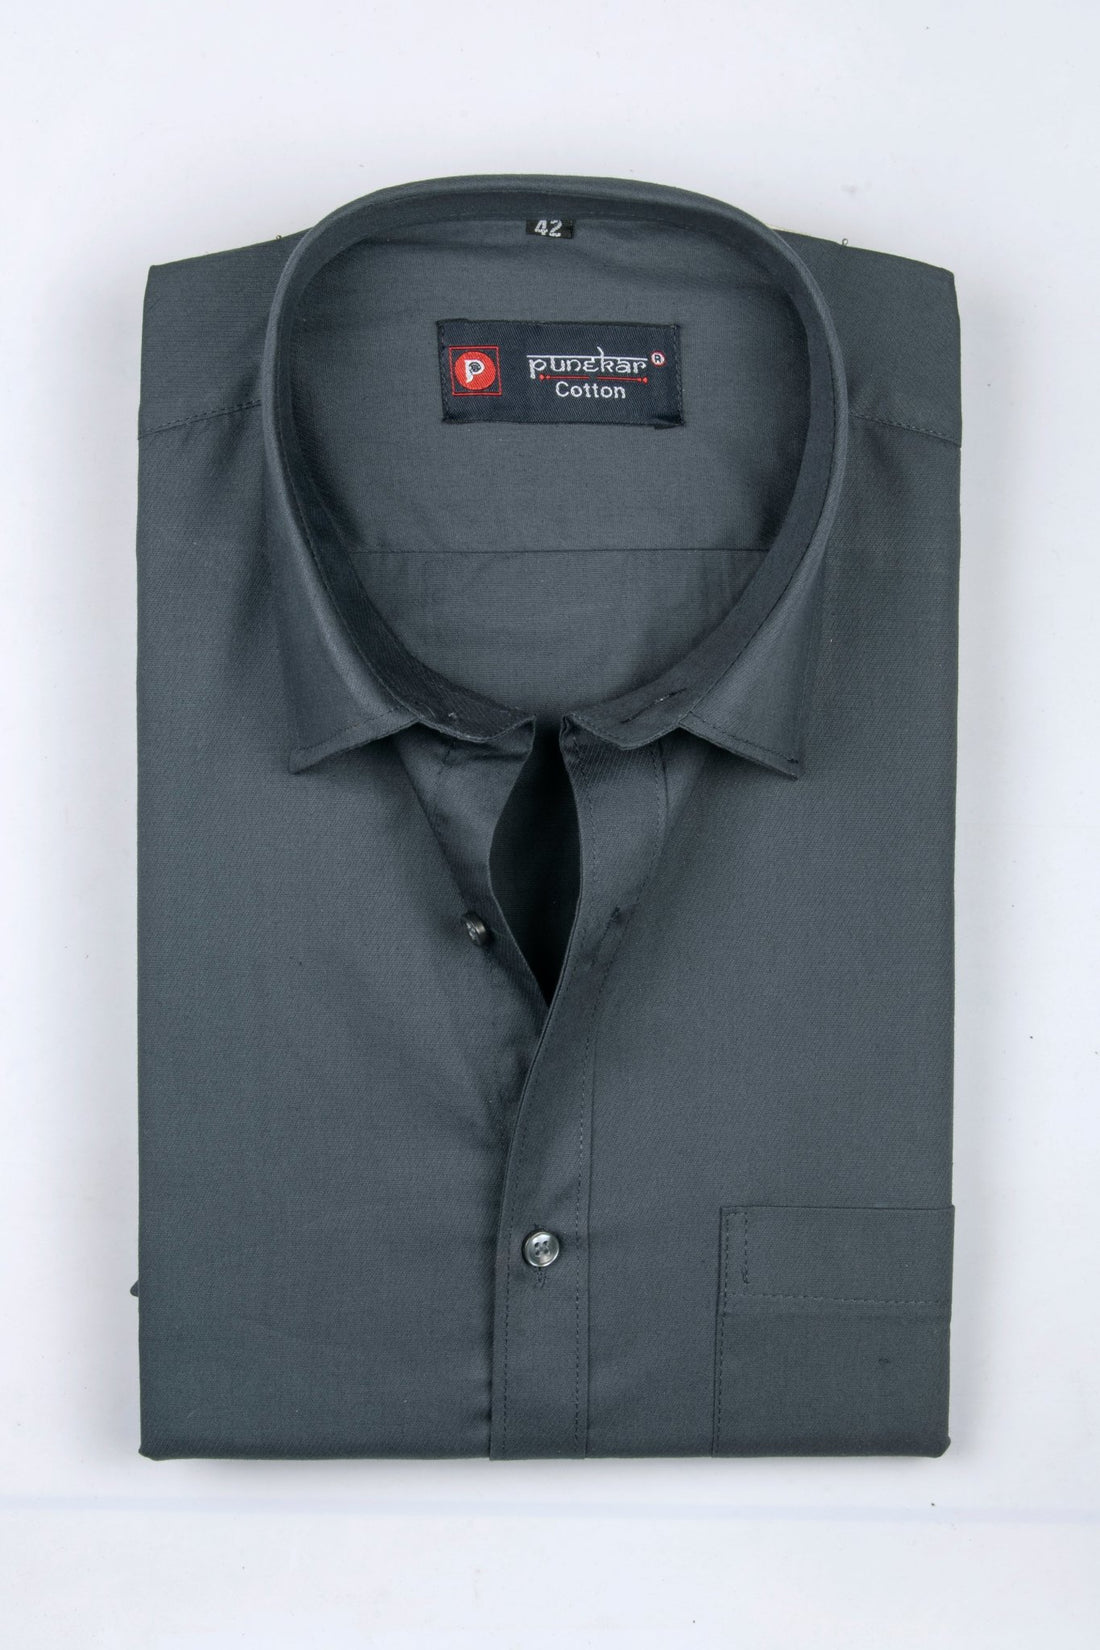 Punekar Cotton Carbon Color 100% Mercerised Cotton Diagonally Woven Formal Shirt for Men&